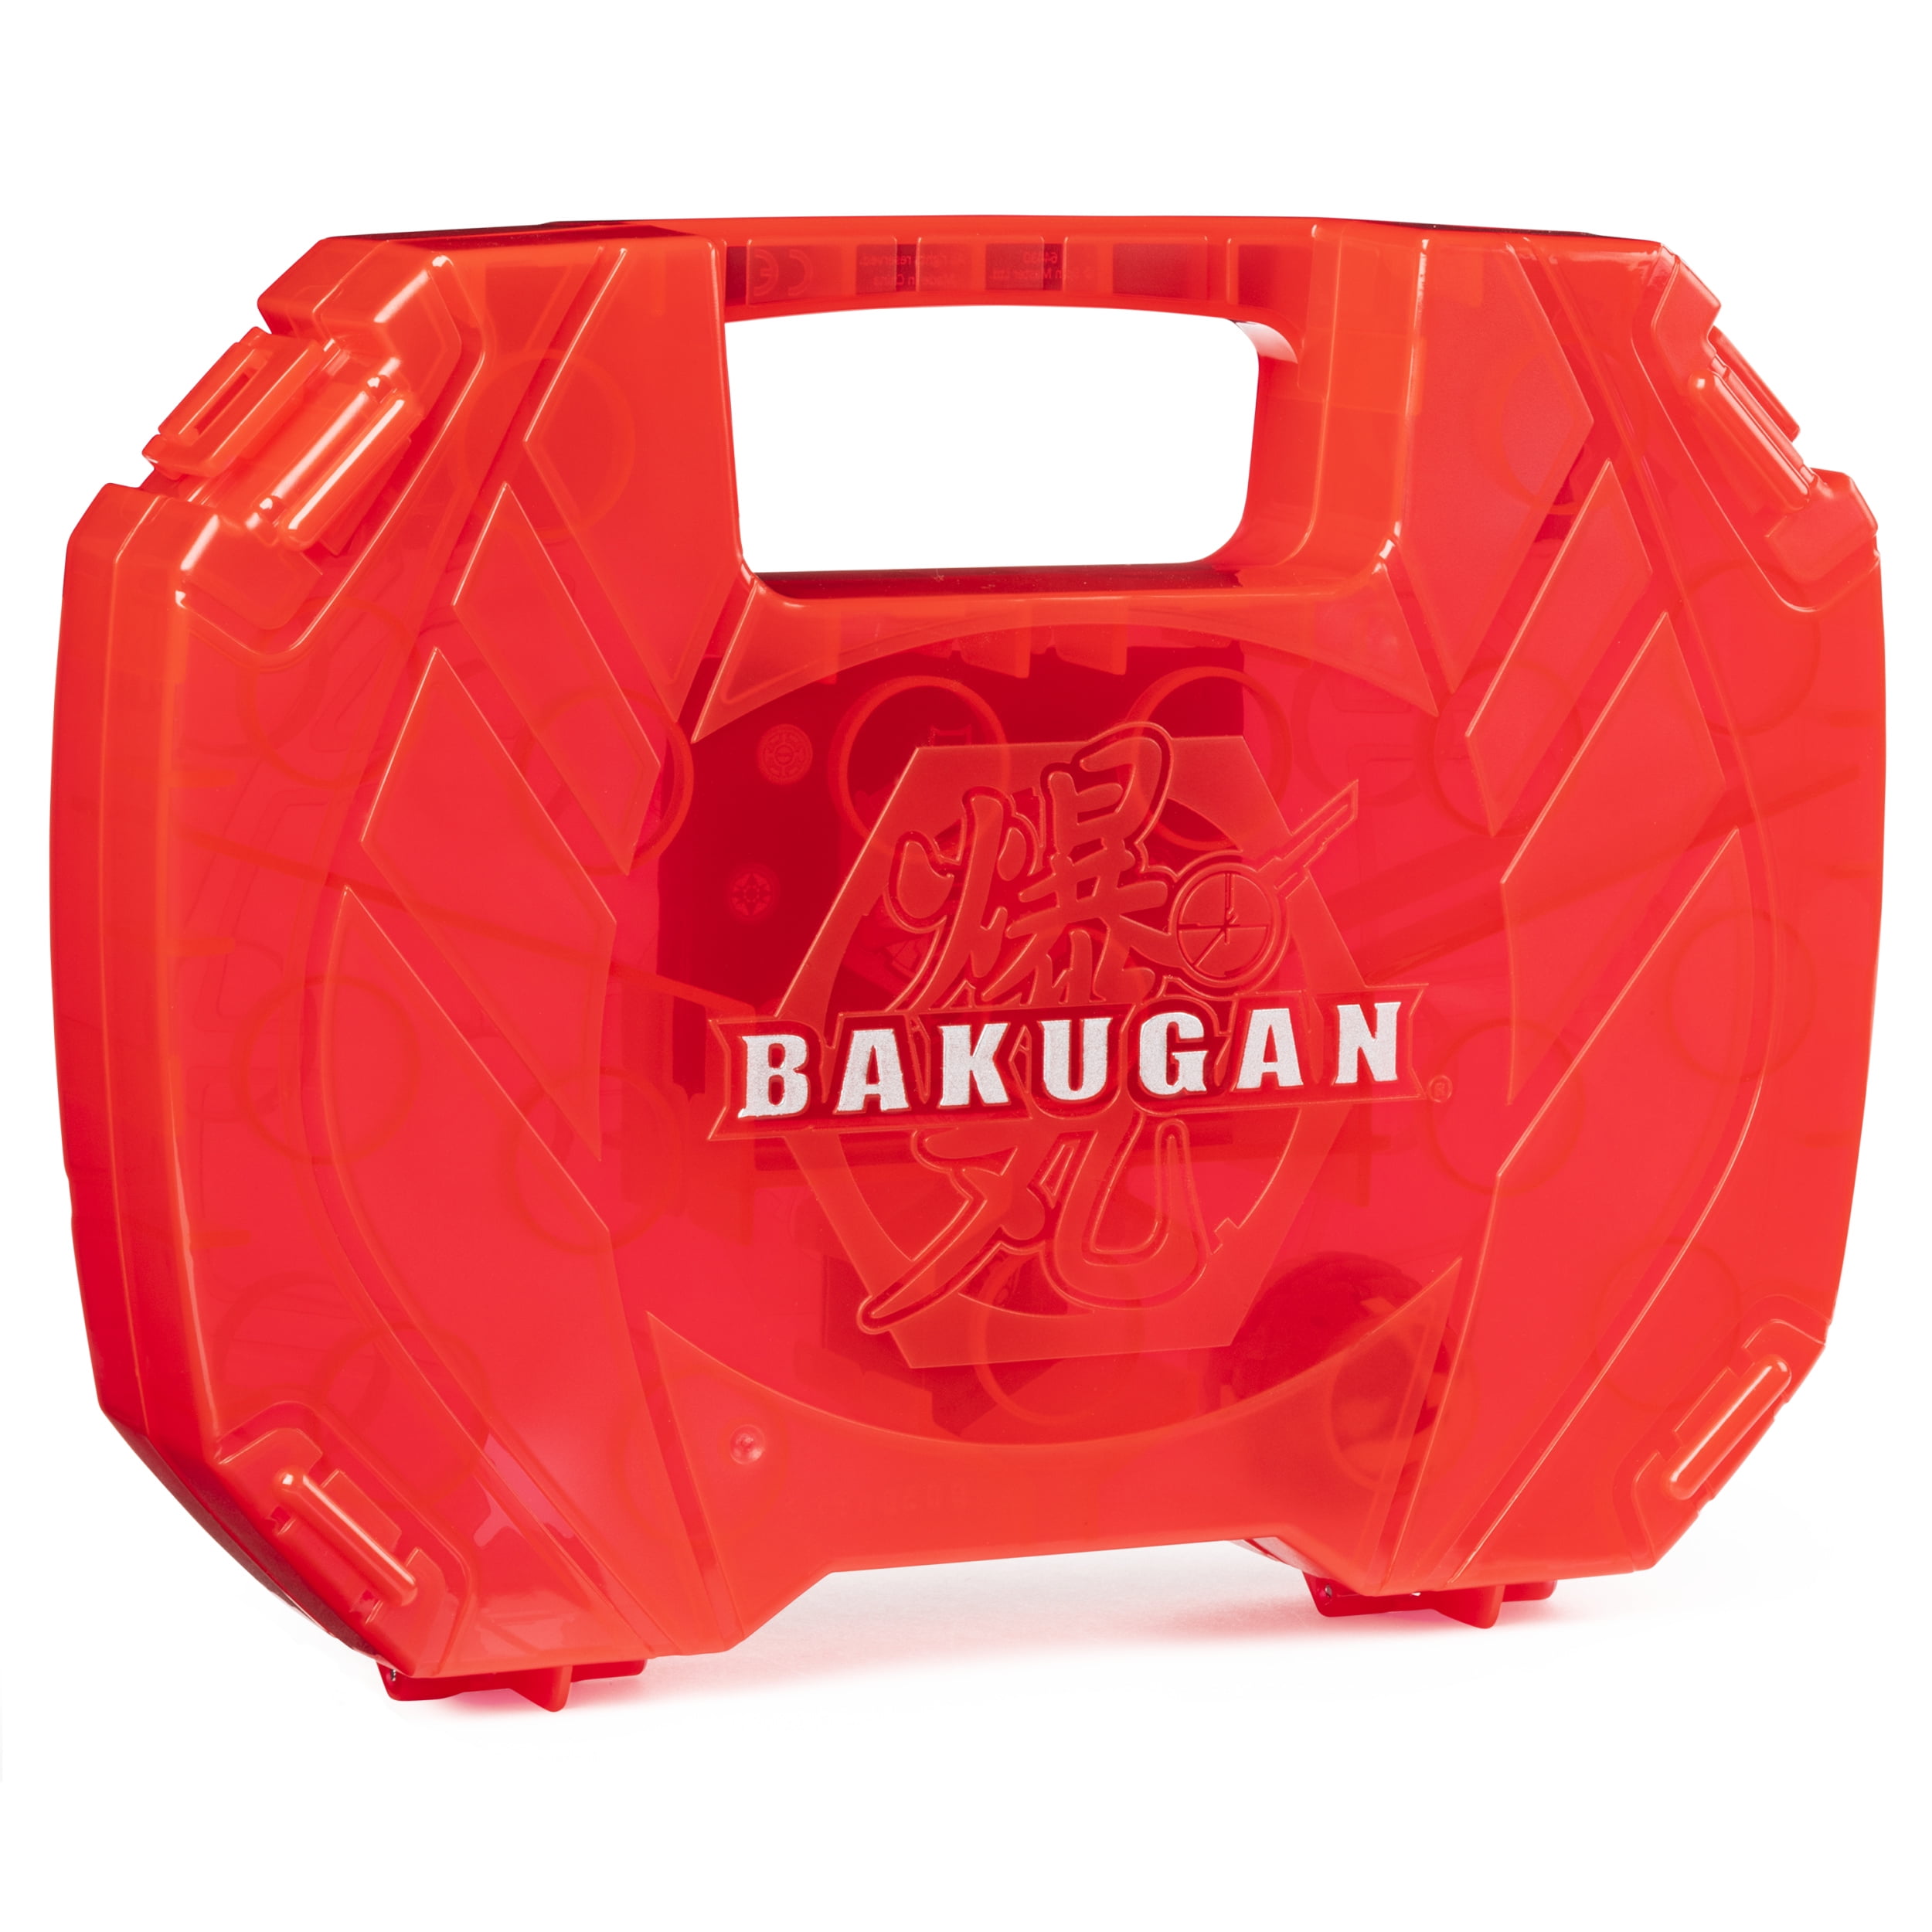 Bakugan Battle Planet Storage Case Aufbewahrungskoffer rot /& 1 Bakugan